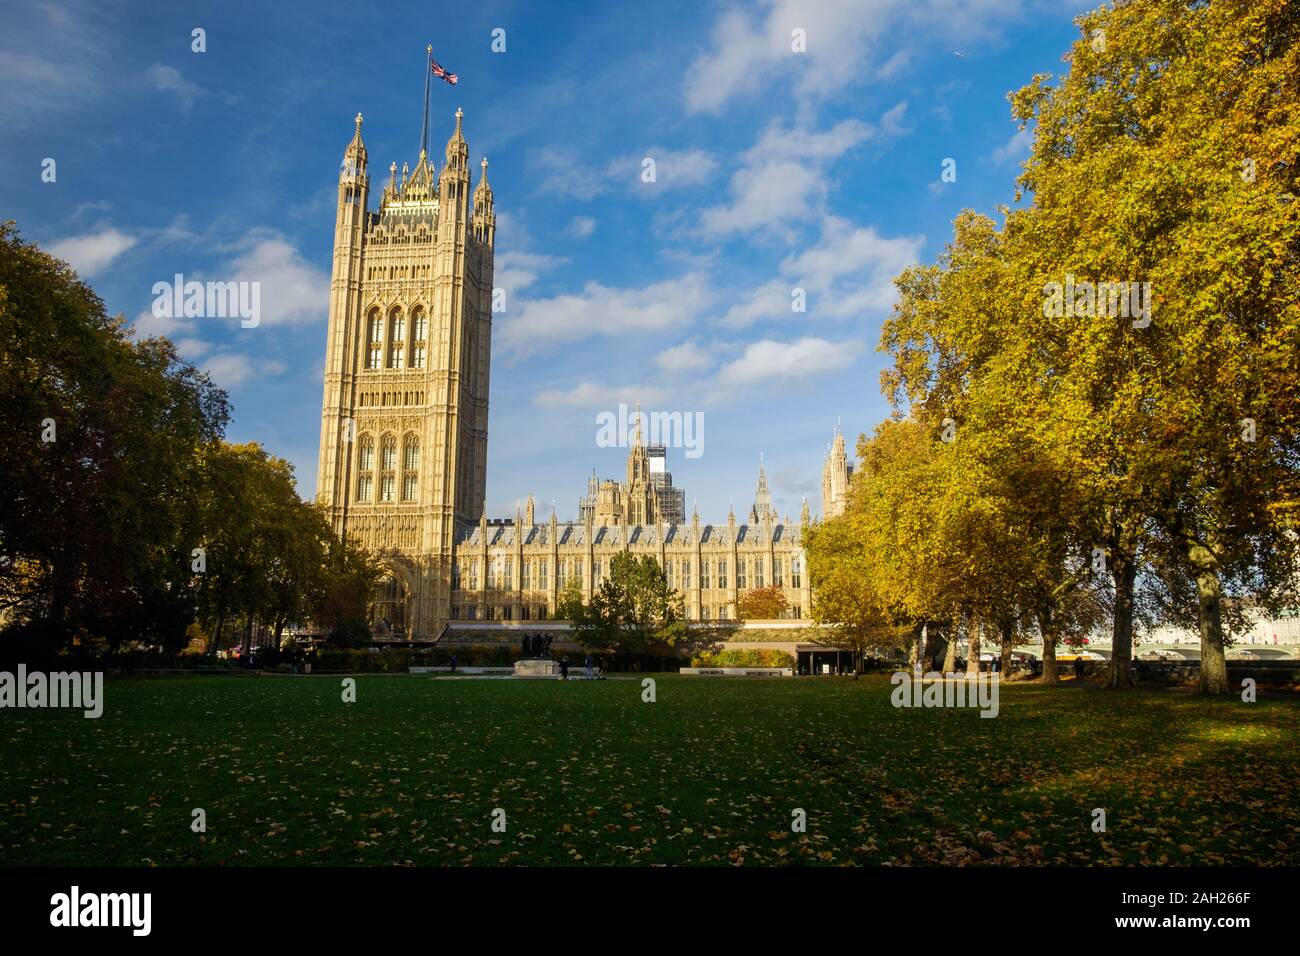 El Palacio de Westminster, con victoria de la torre a la izquierda, es uno de los símbolos de Londres. En el primer plano, hay jardines públicos. Foto de stock